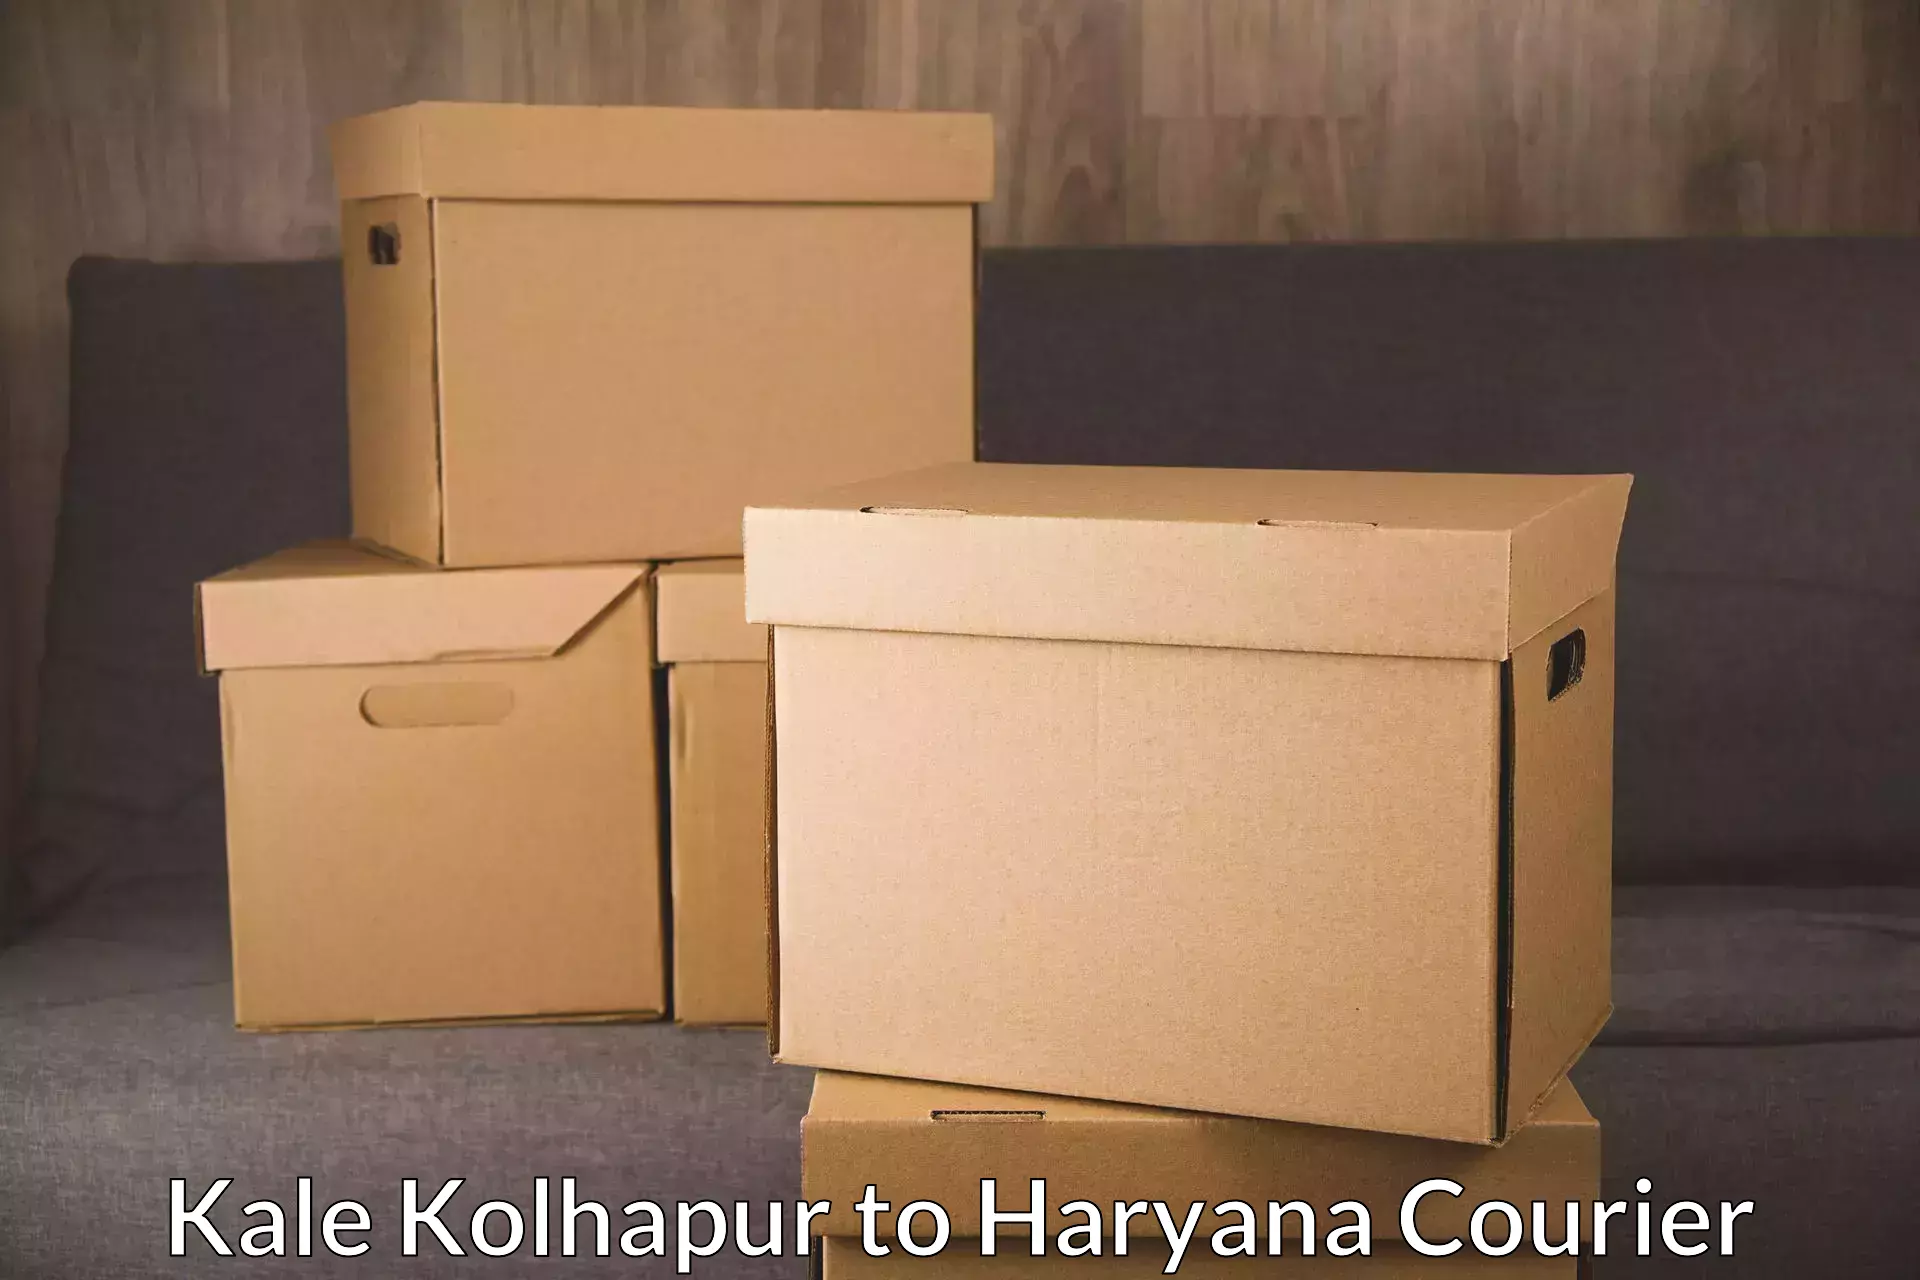 Express mail service Kale Kolhapur to Haryana